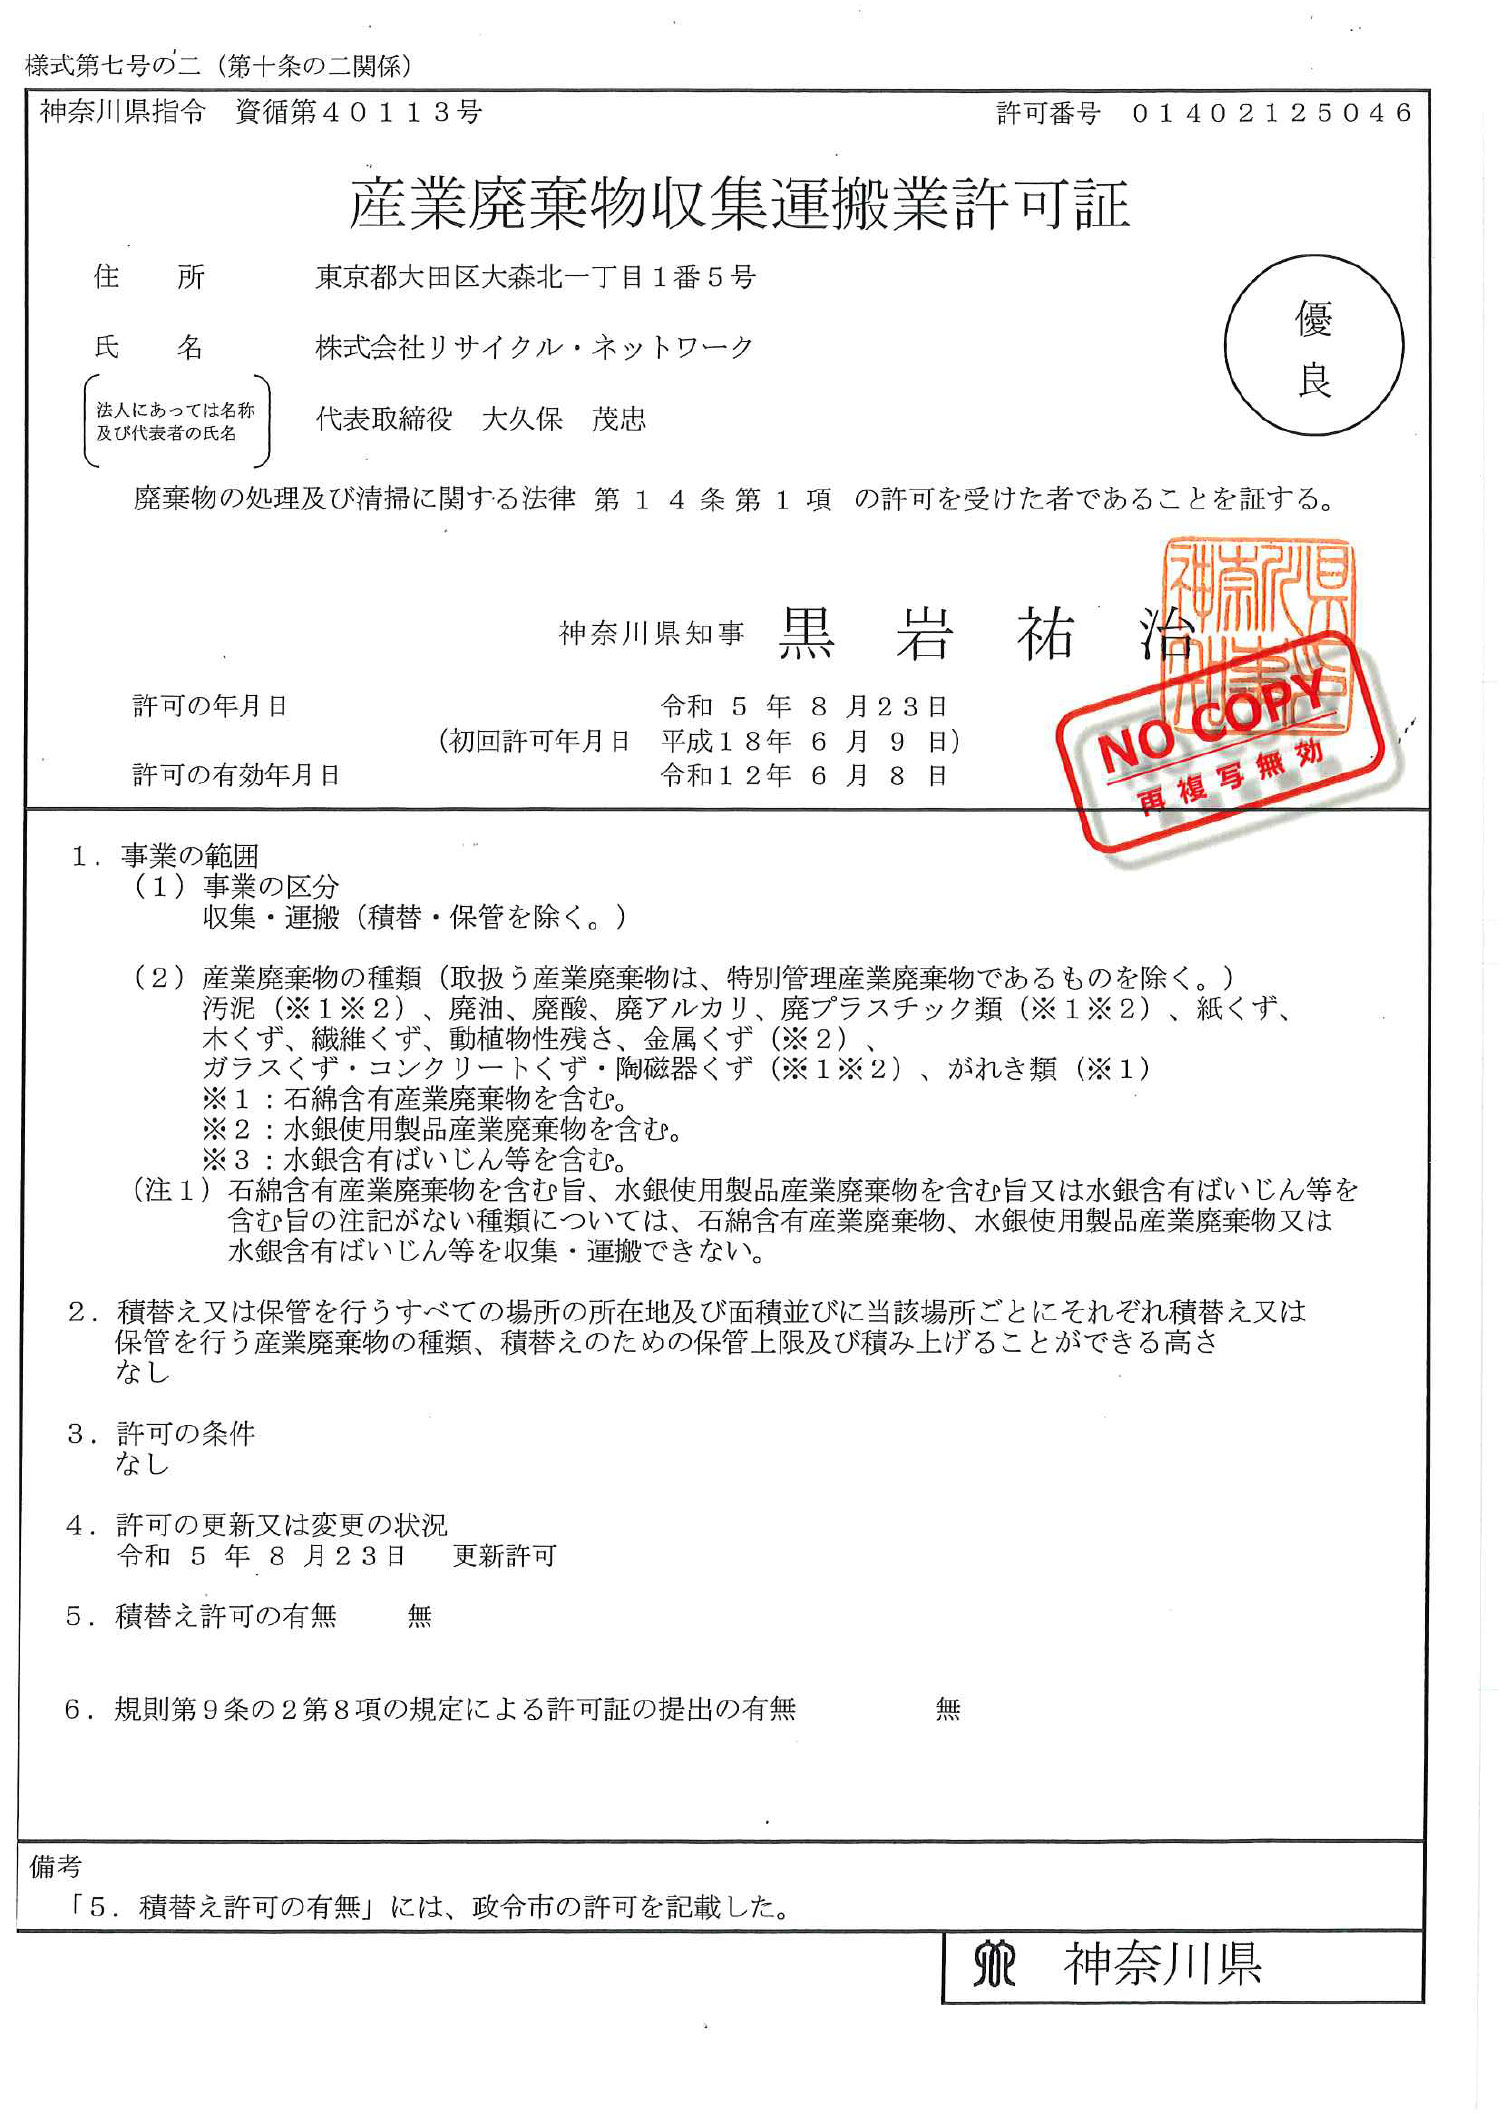 神奈川県 産業廃棄物収集運搬許可証